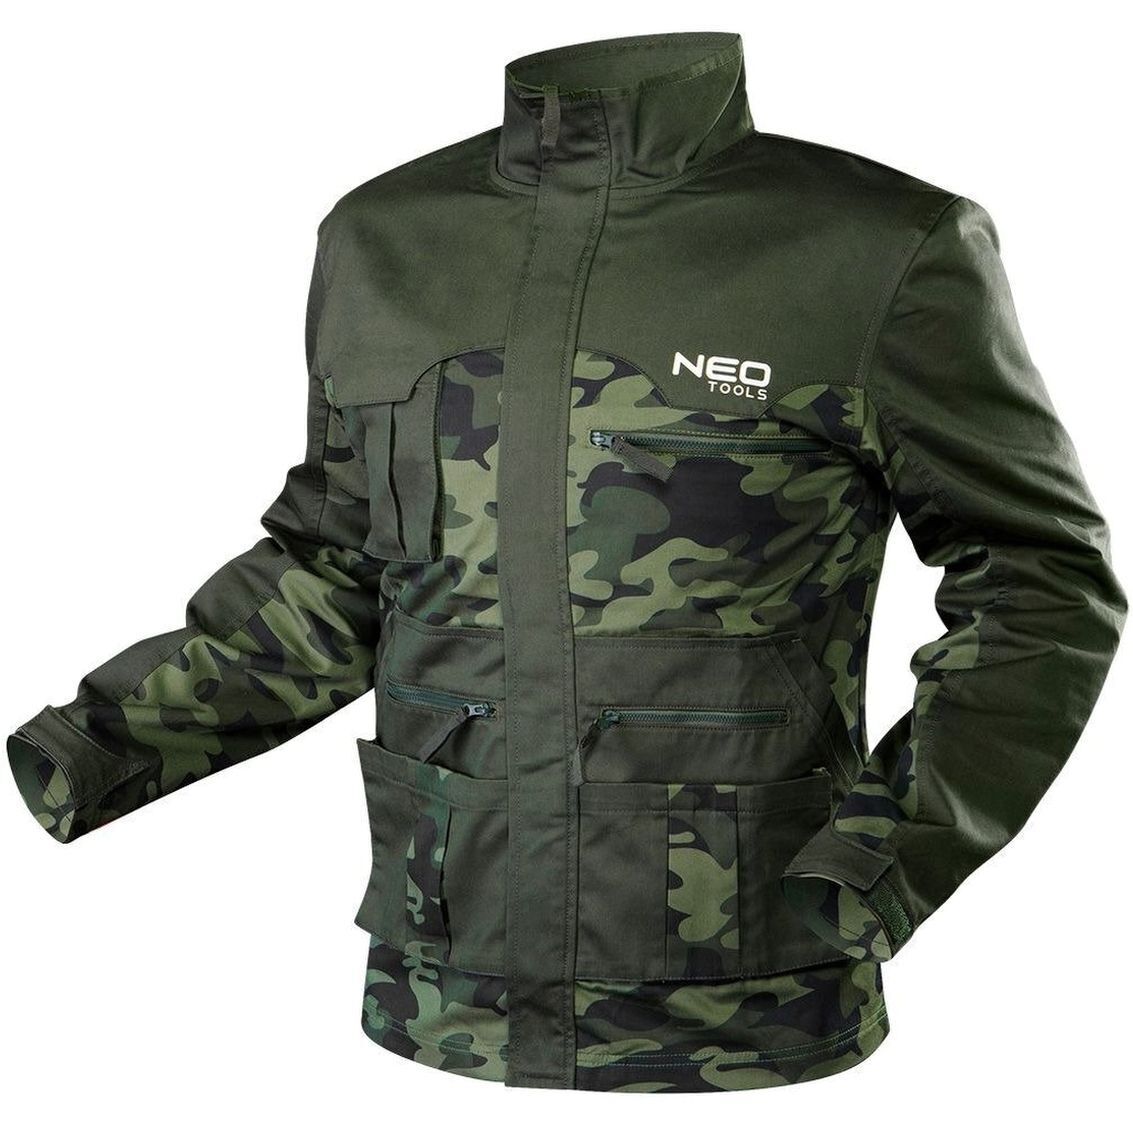 Робоча куртка Neo Tools CAMO, розмір S/48 (81-211-S)фото